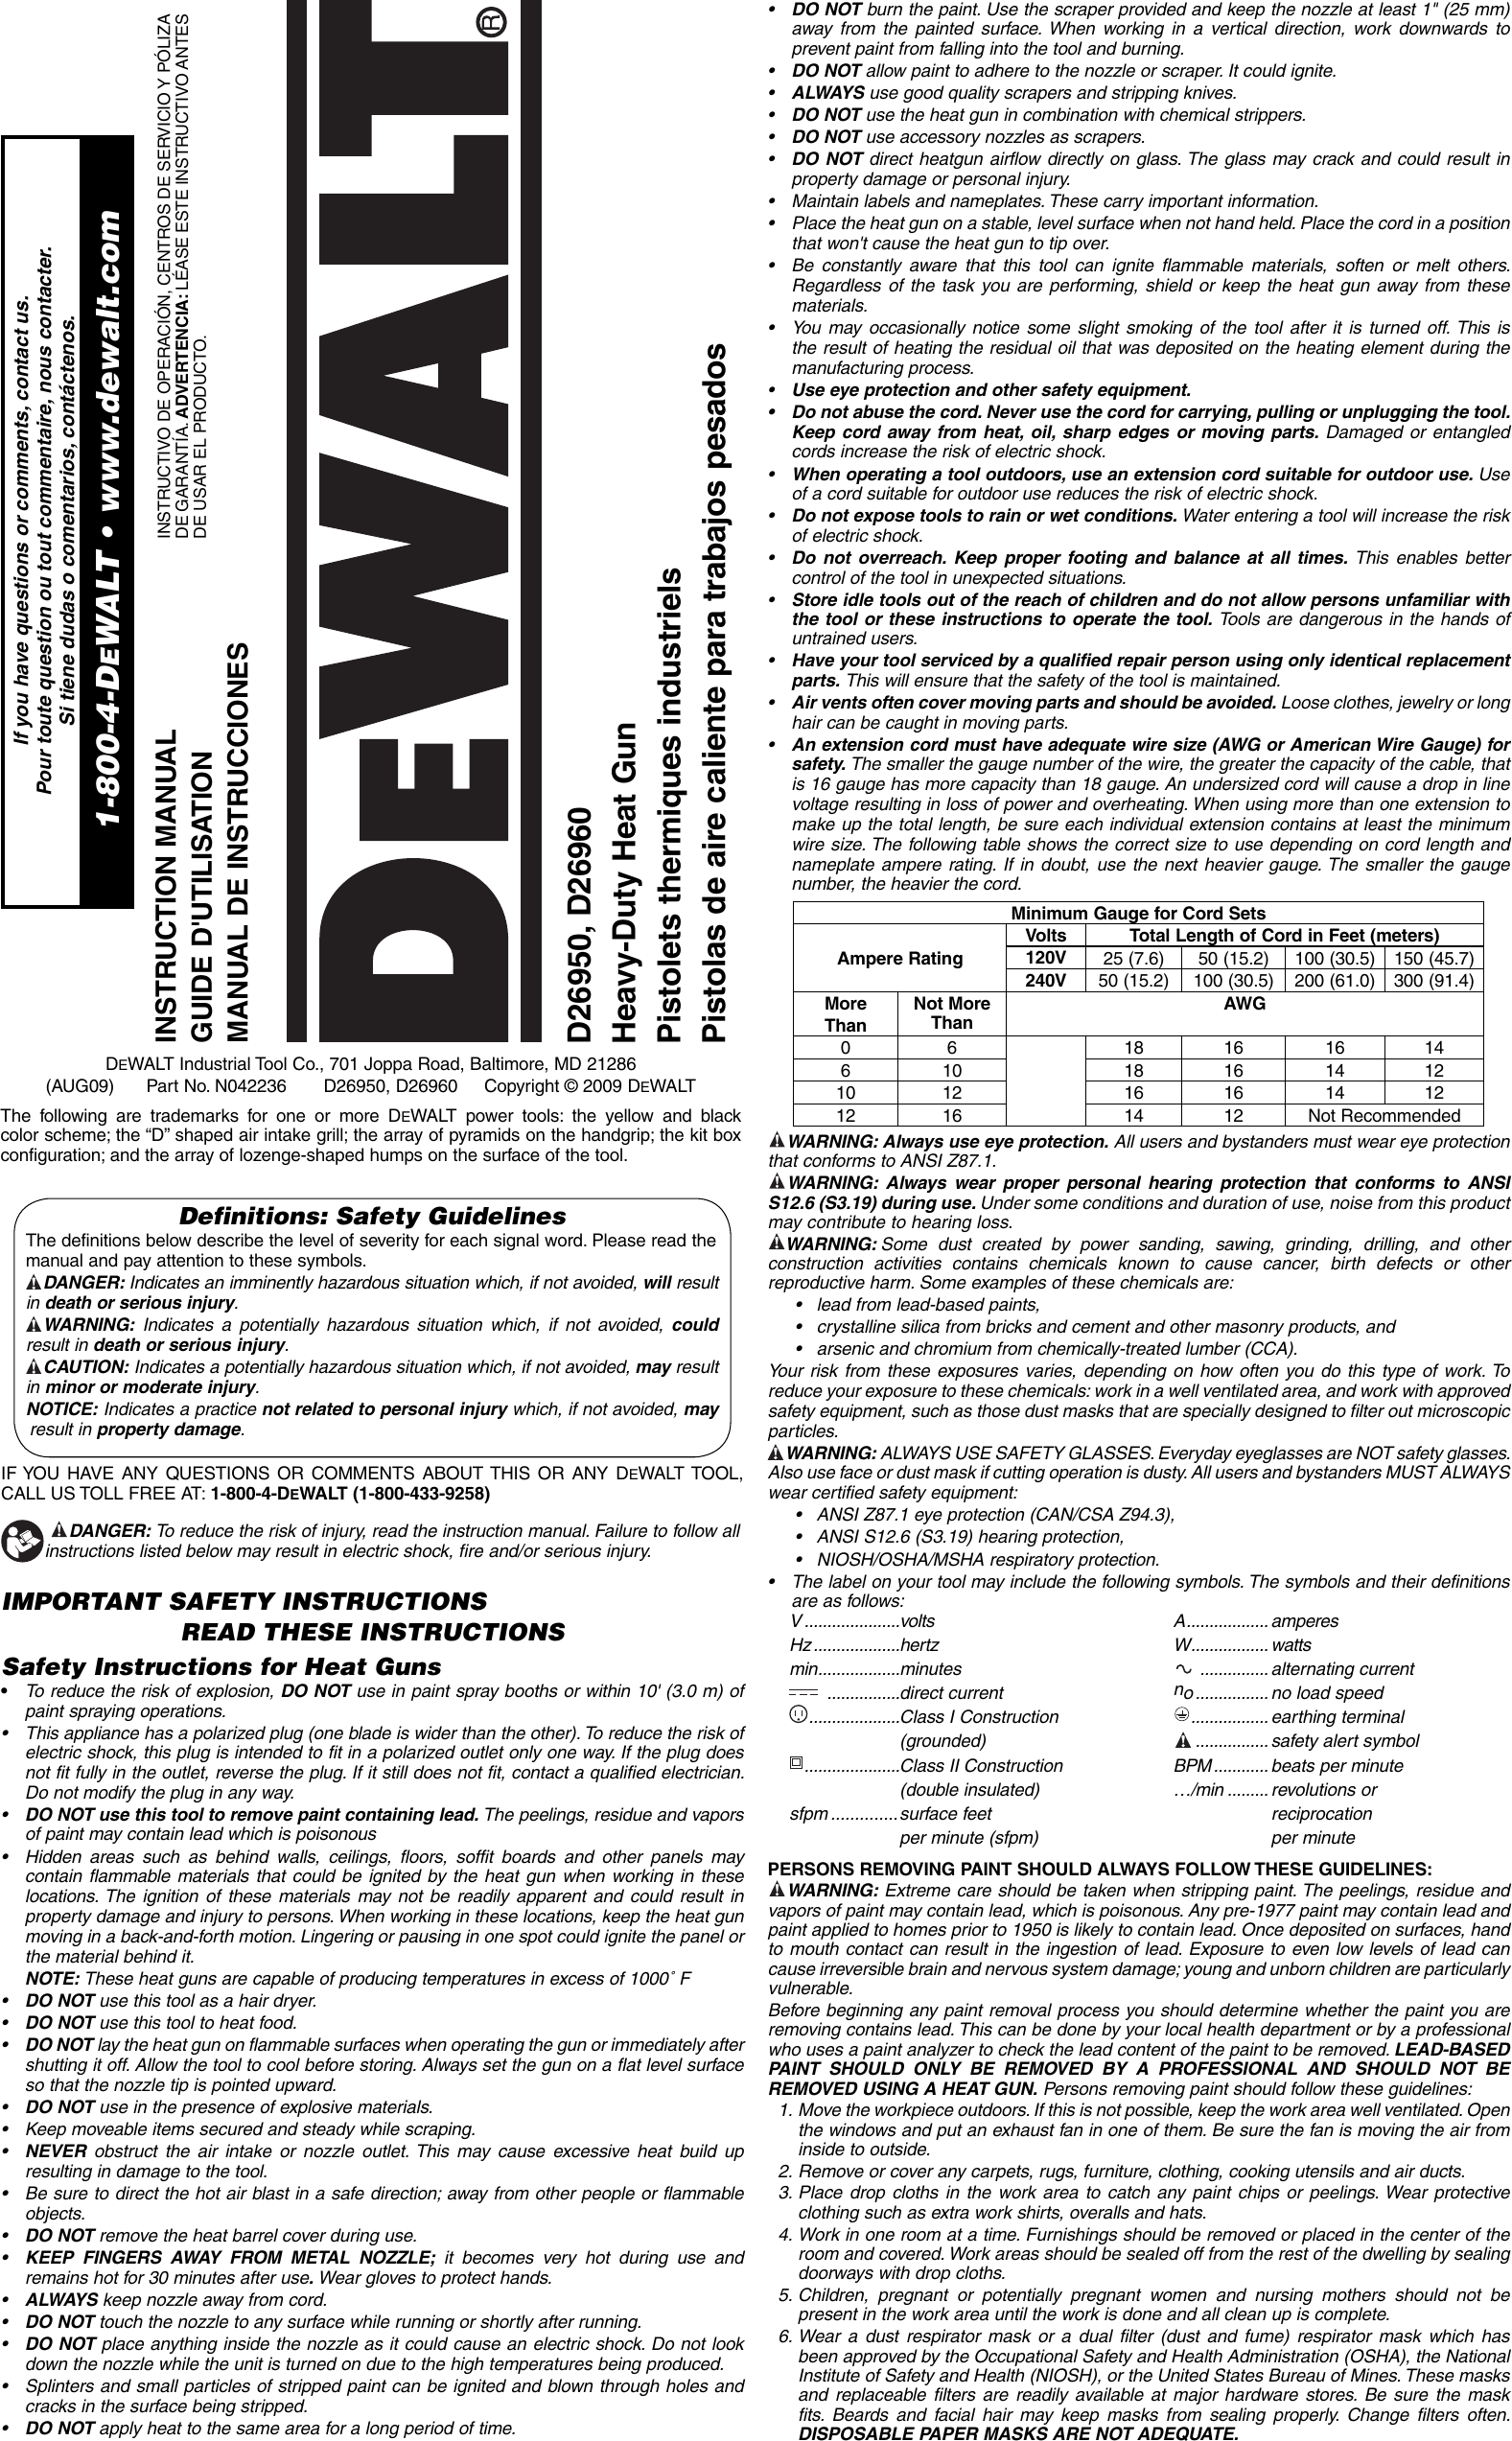 Page 1 of 7 - DeWalt D26960K D26950 Heat Gun NA User Manual  To The 1f6861de-222d-4353-86d6-e7cfa9e8f729